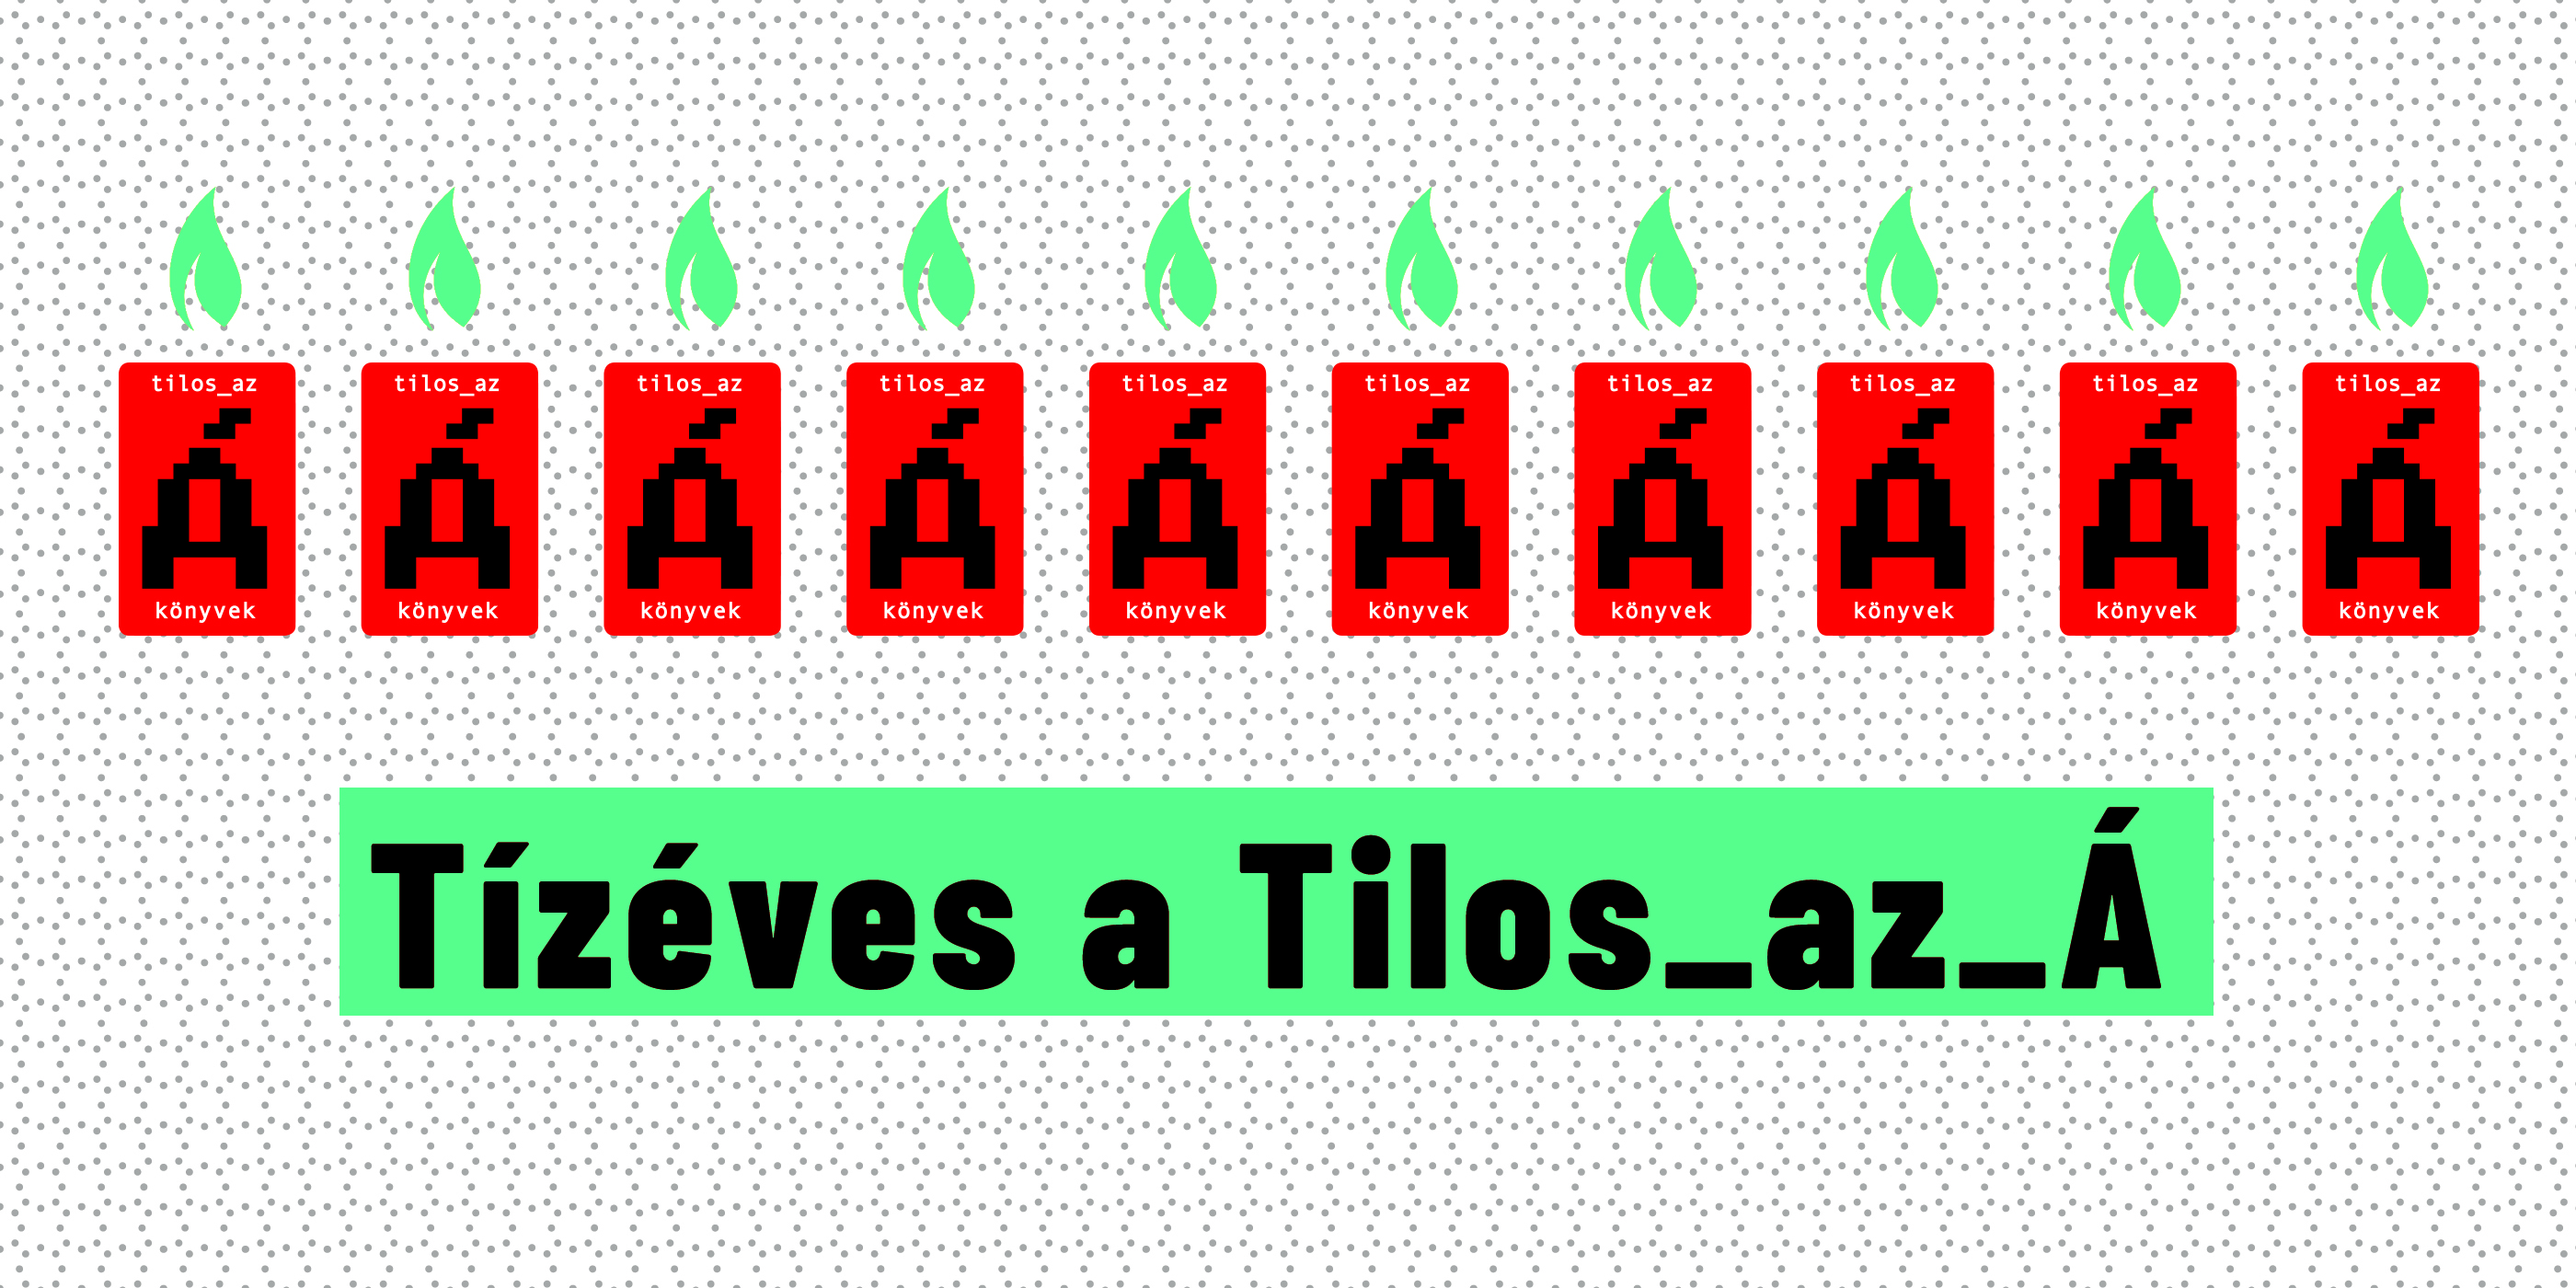 tiz_eves_a_tilos.jpg